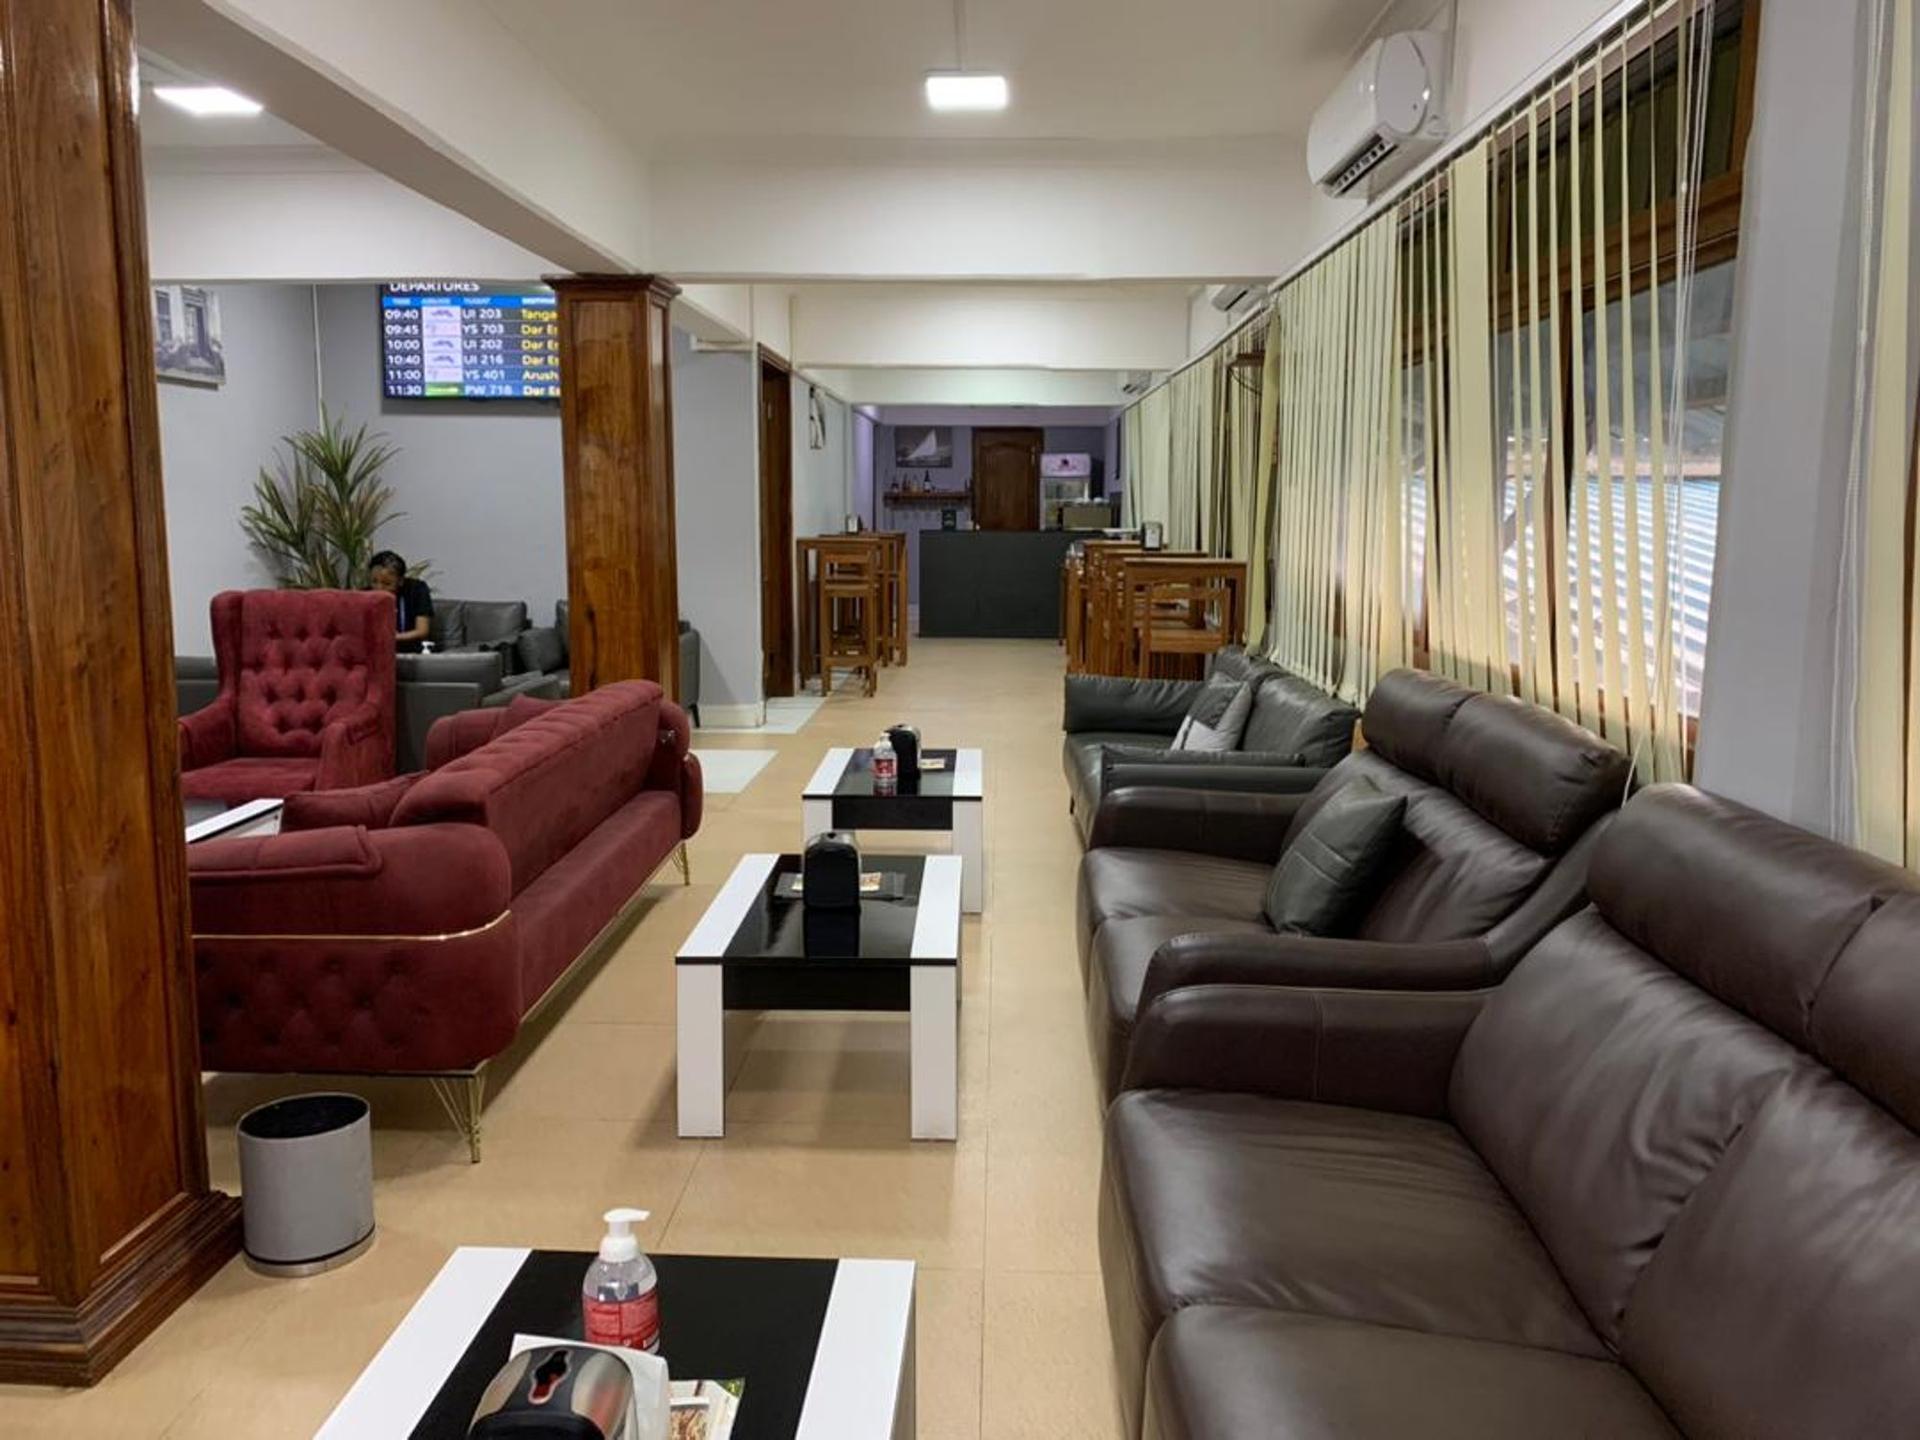 The Premium Lounge Zanzibar image 2 of 7